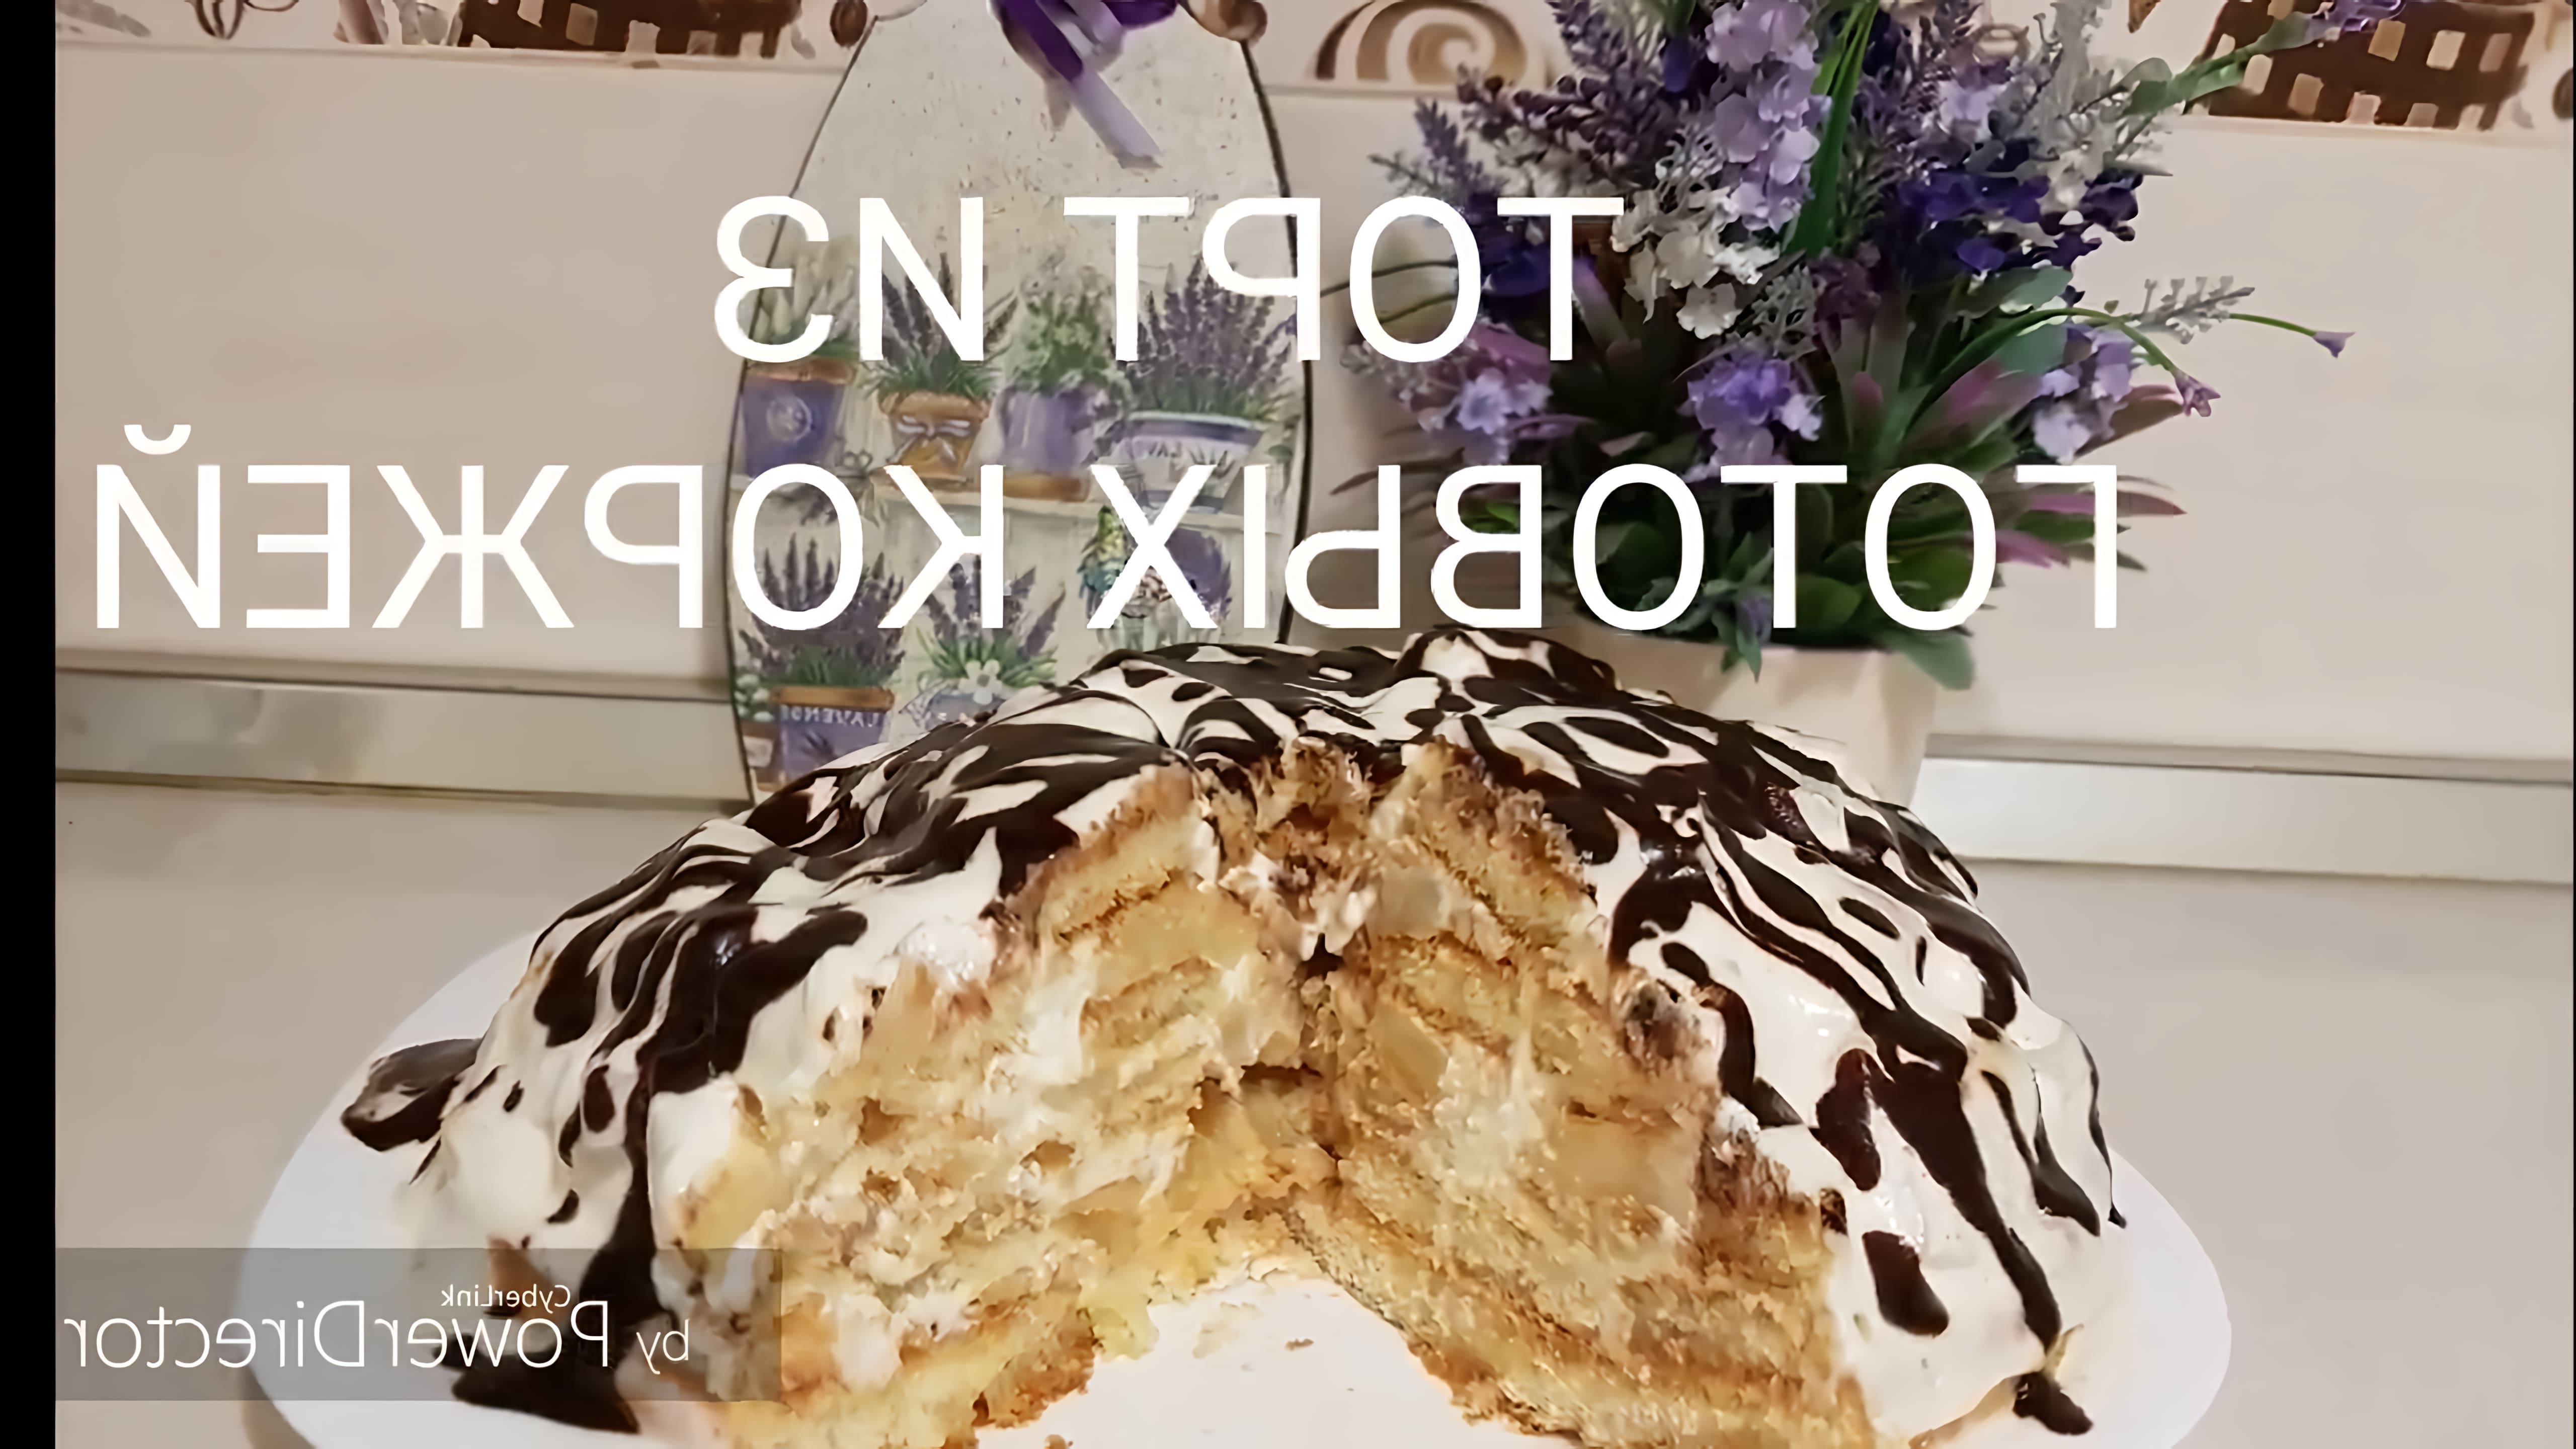 В этом видео демонстрируется процесс приготовления торта из готовых коржей